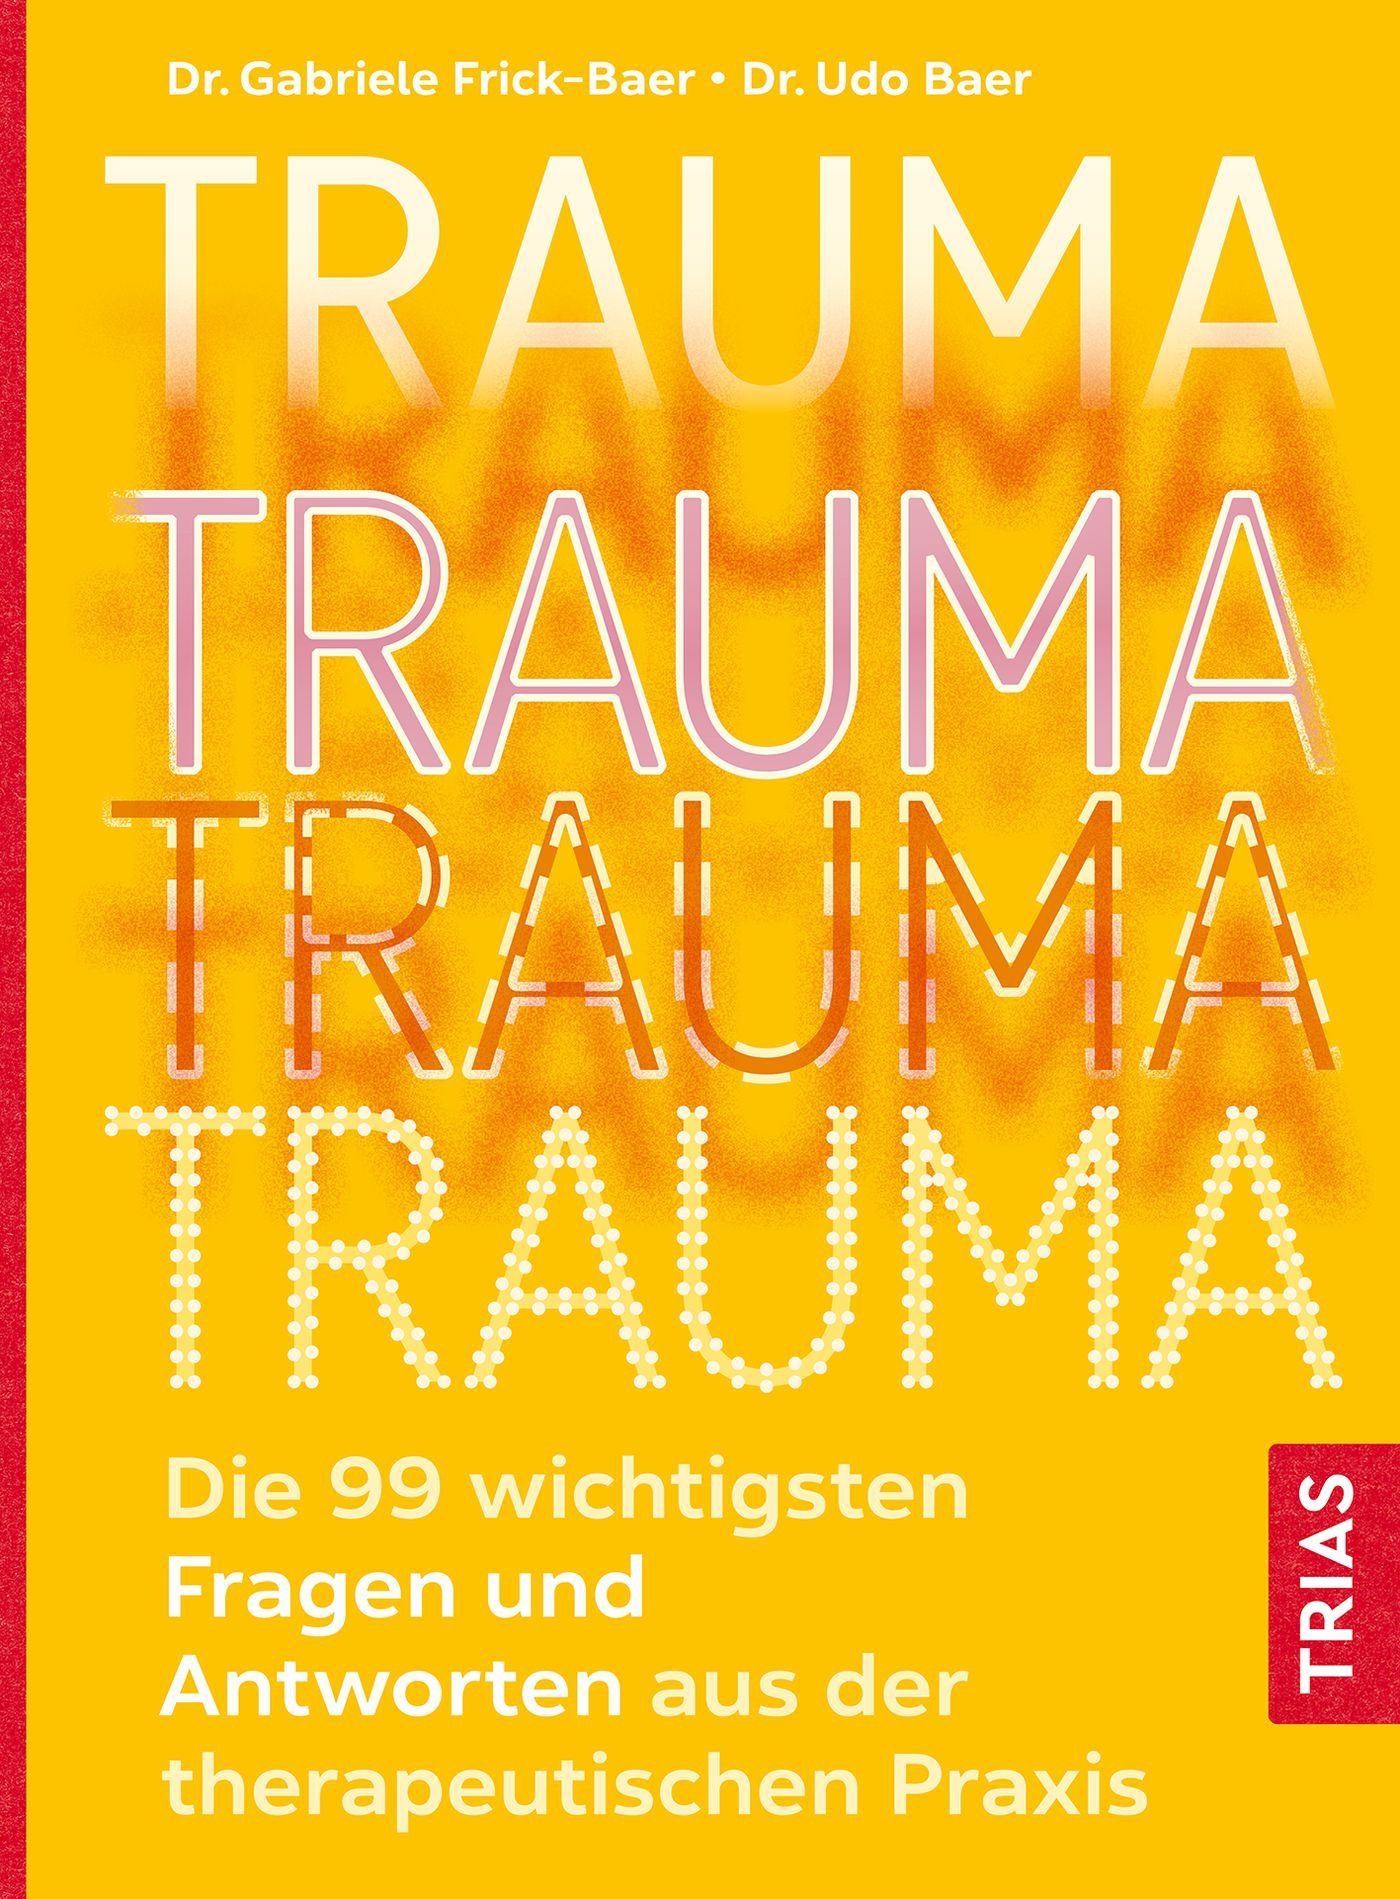 Trauma Buch 1 St